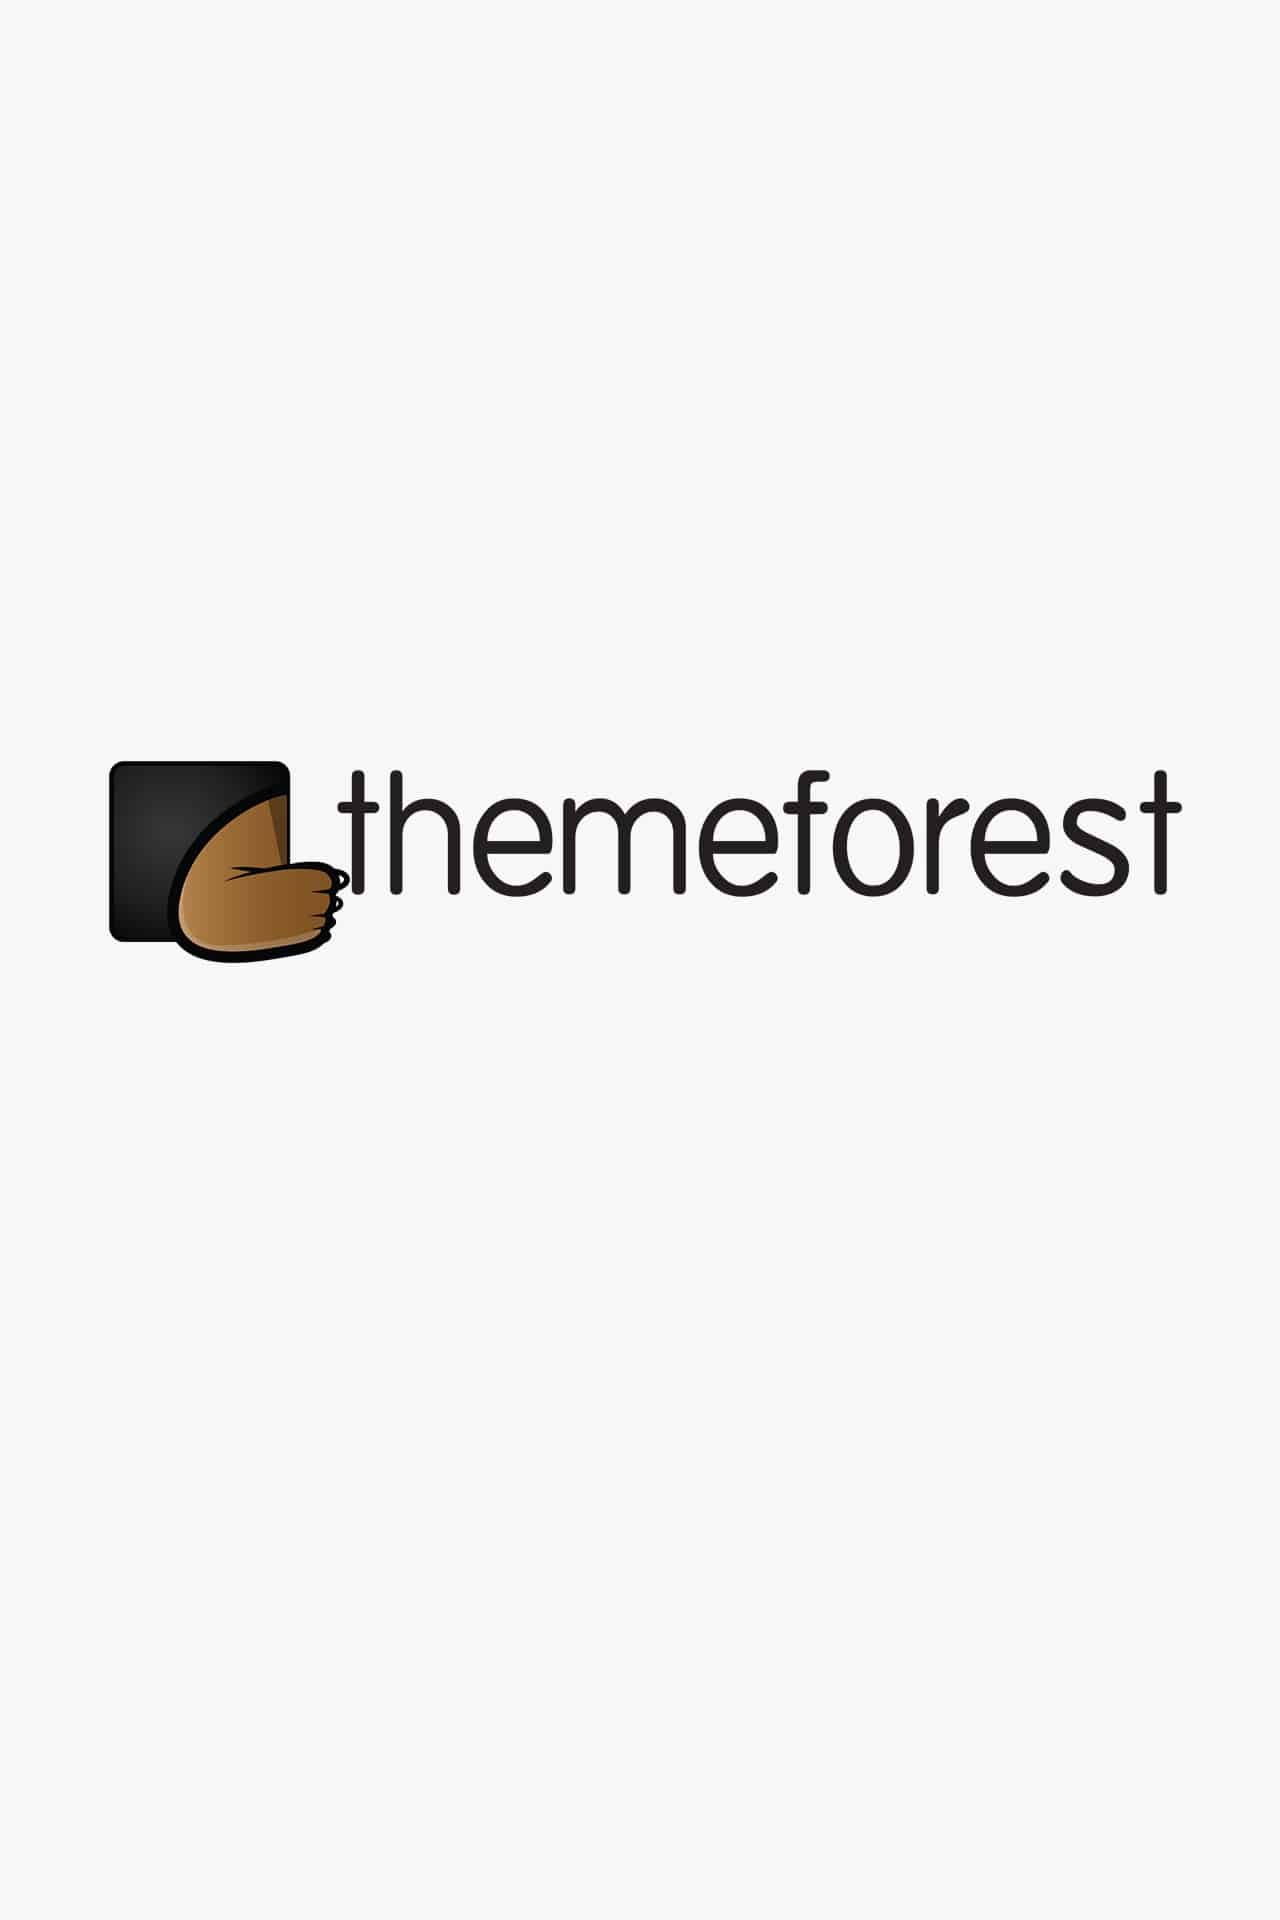 themeforest